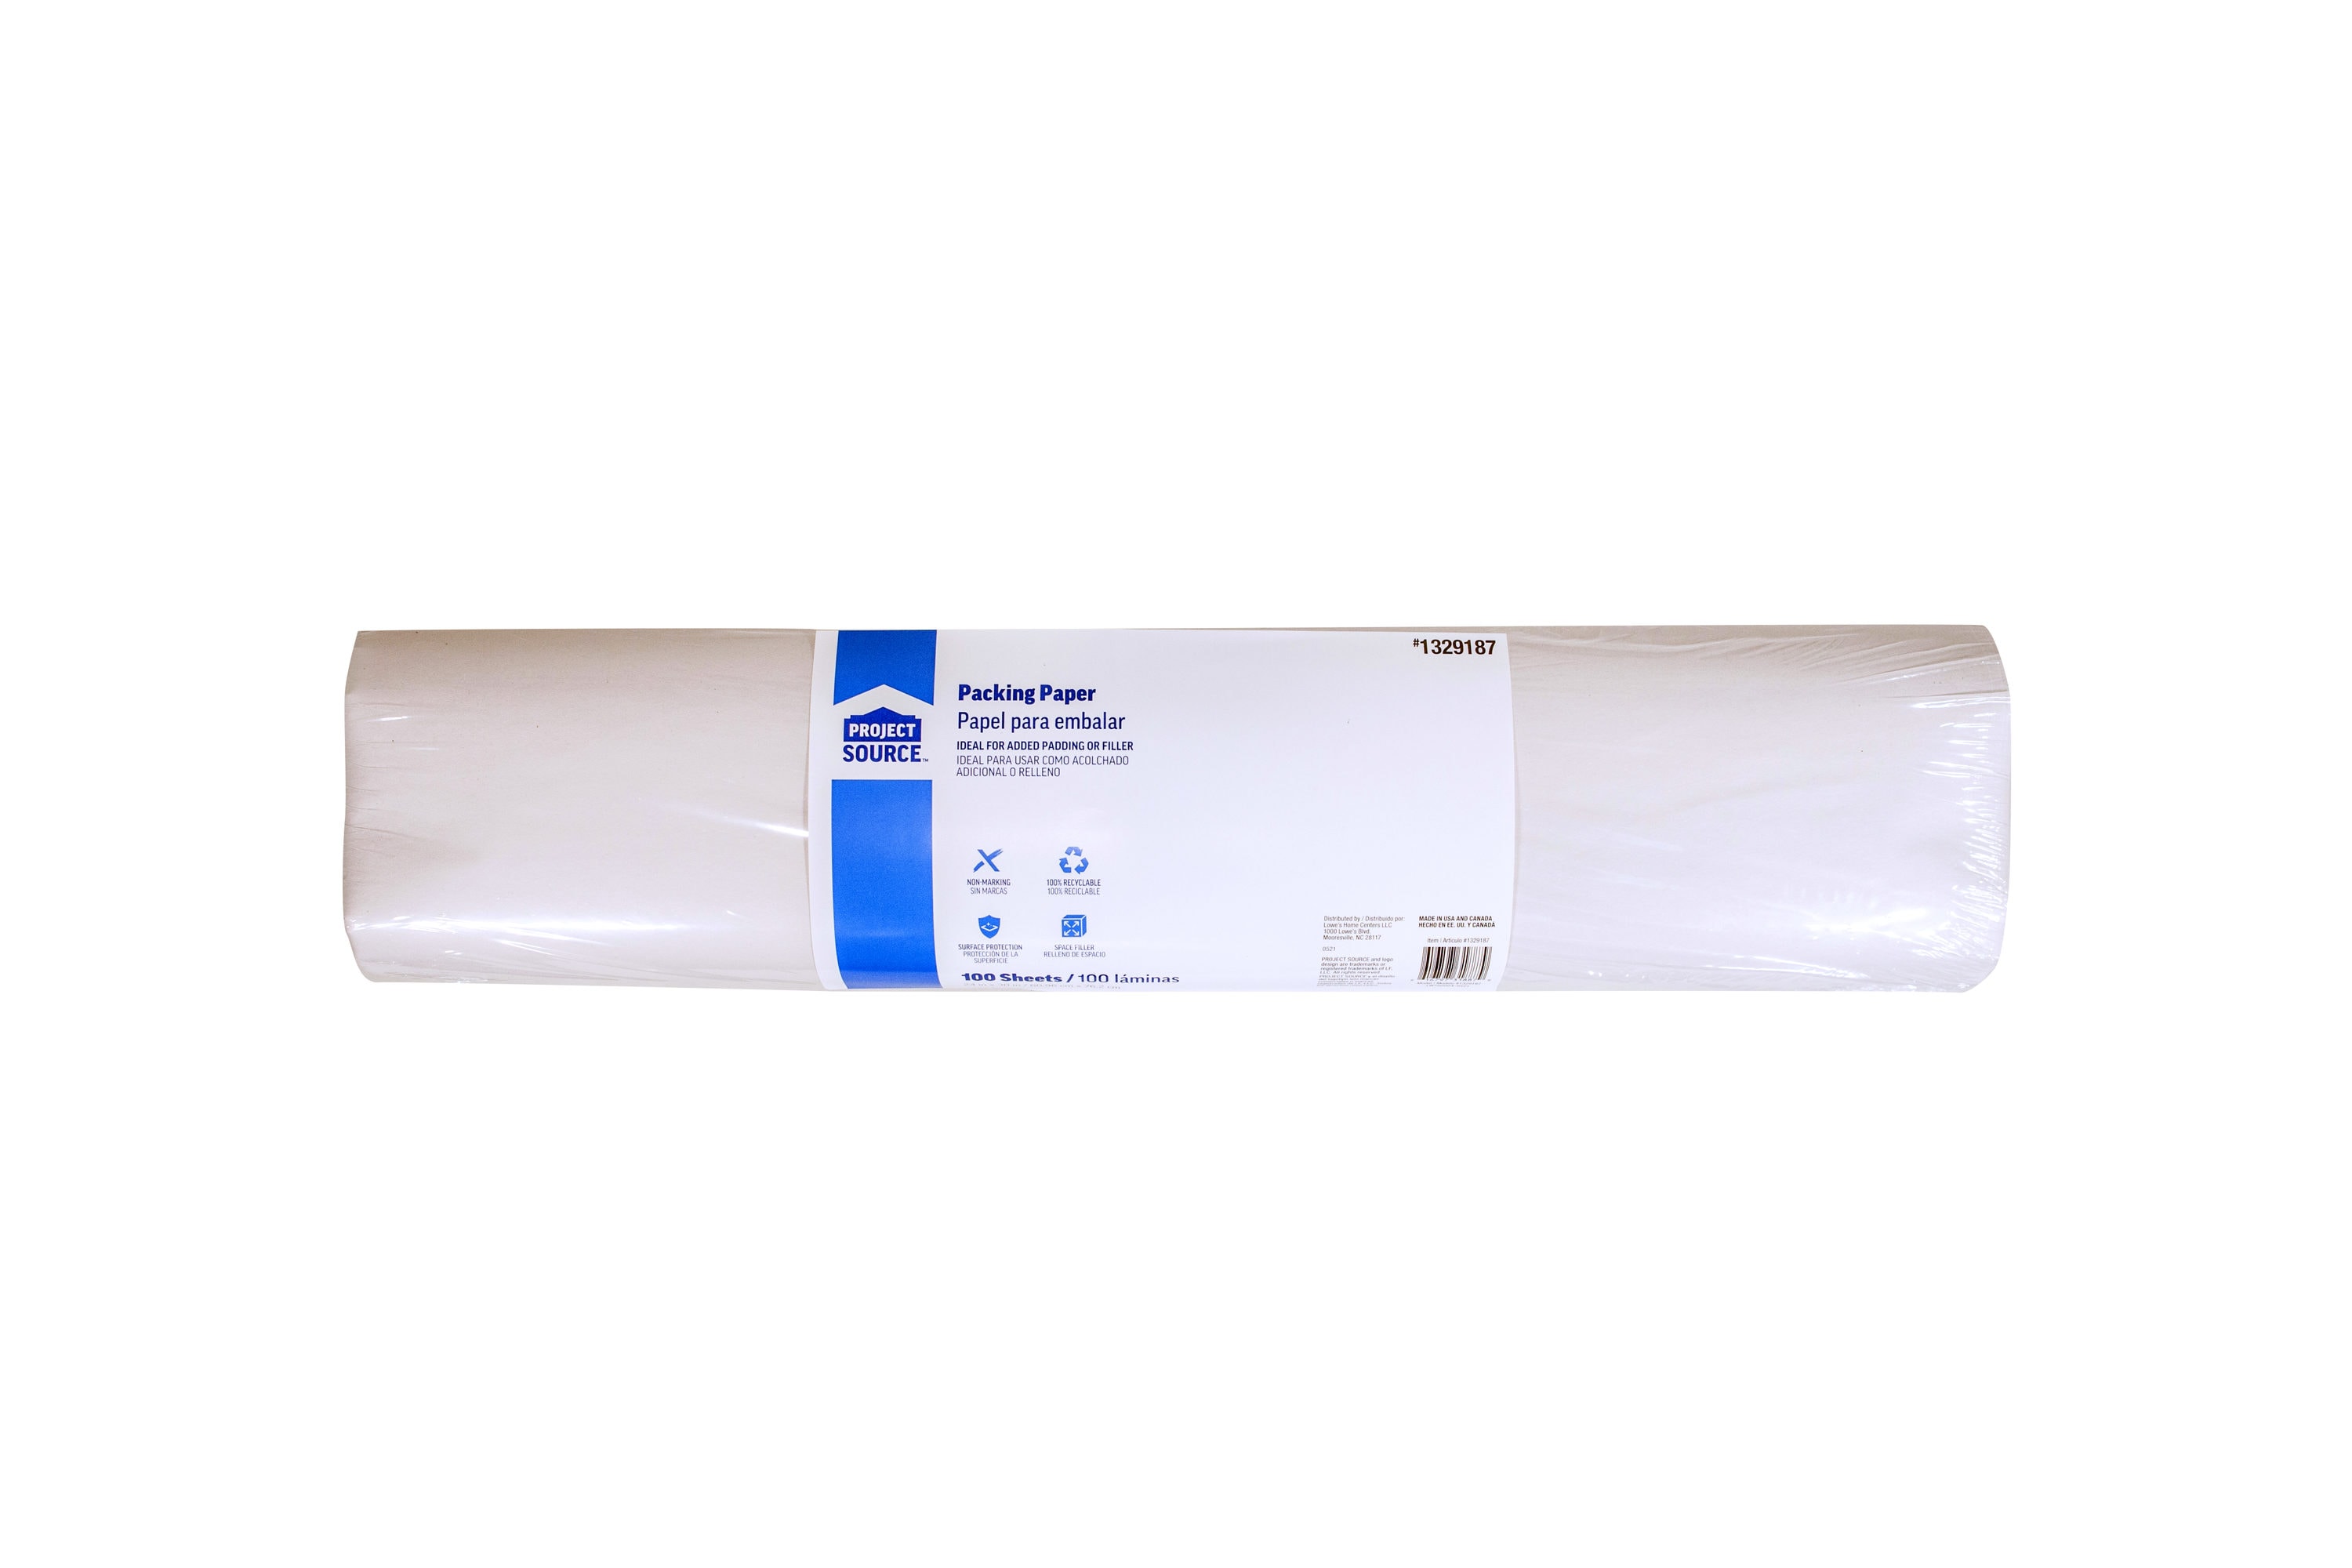 18 x 250' Black Kraft Paper Roll, 30 lbs (1, 2, 4 rolls) buy in stock in  U.S. in IDL Packaging